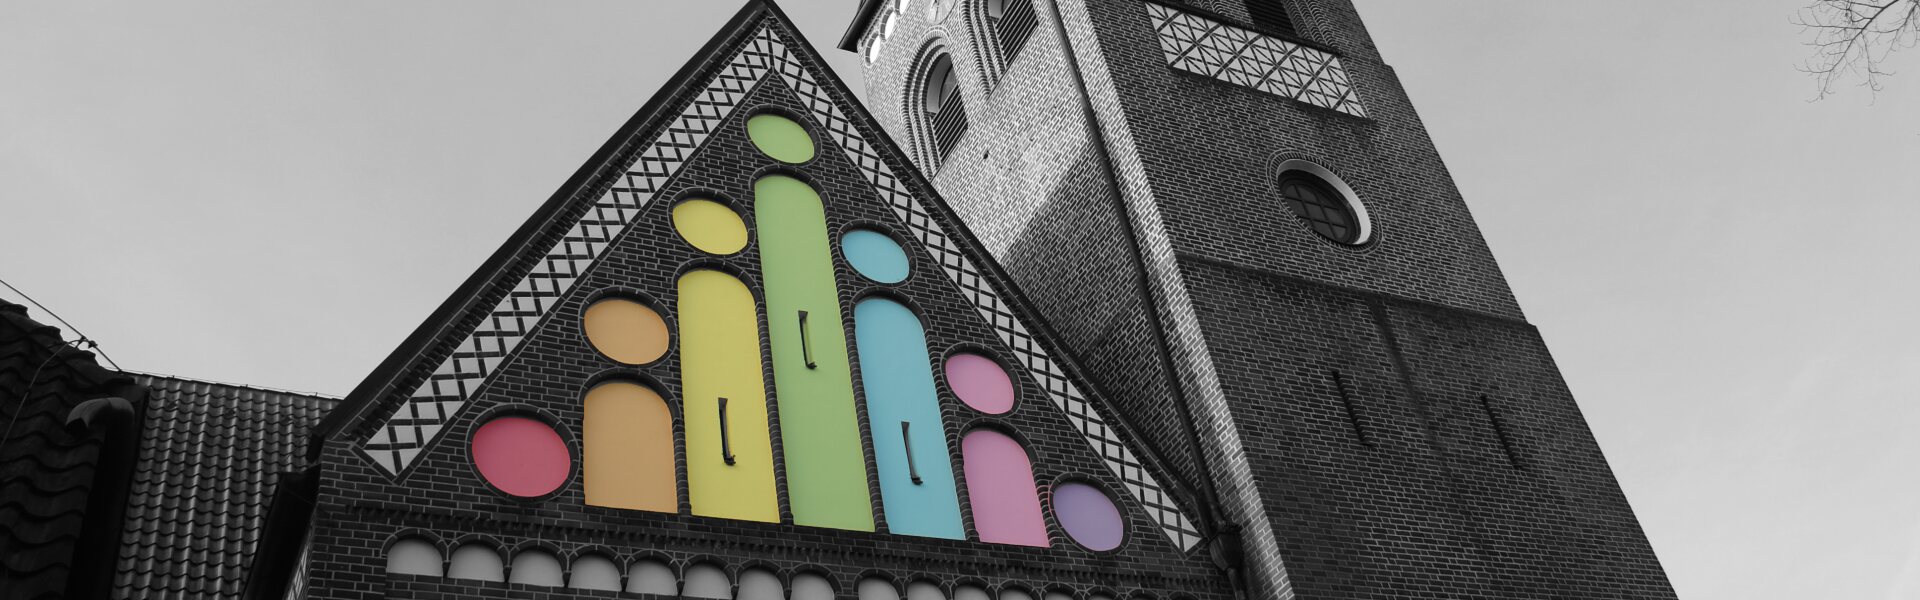 Nordseite der Michaeliskirche als Schwarzweiß-Bild, die Arcaden sind bunt eingefärbt wie das Logo.